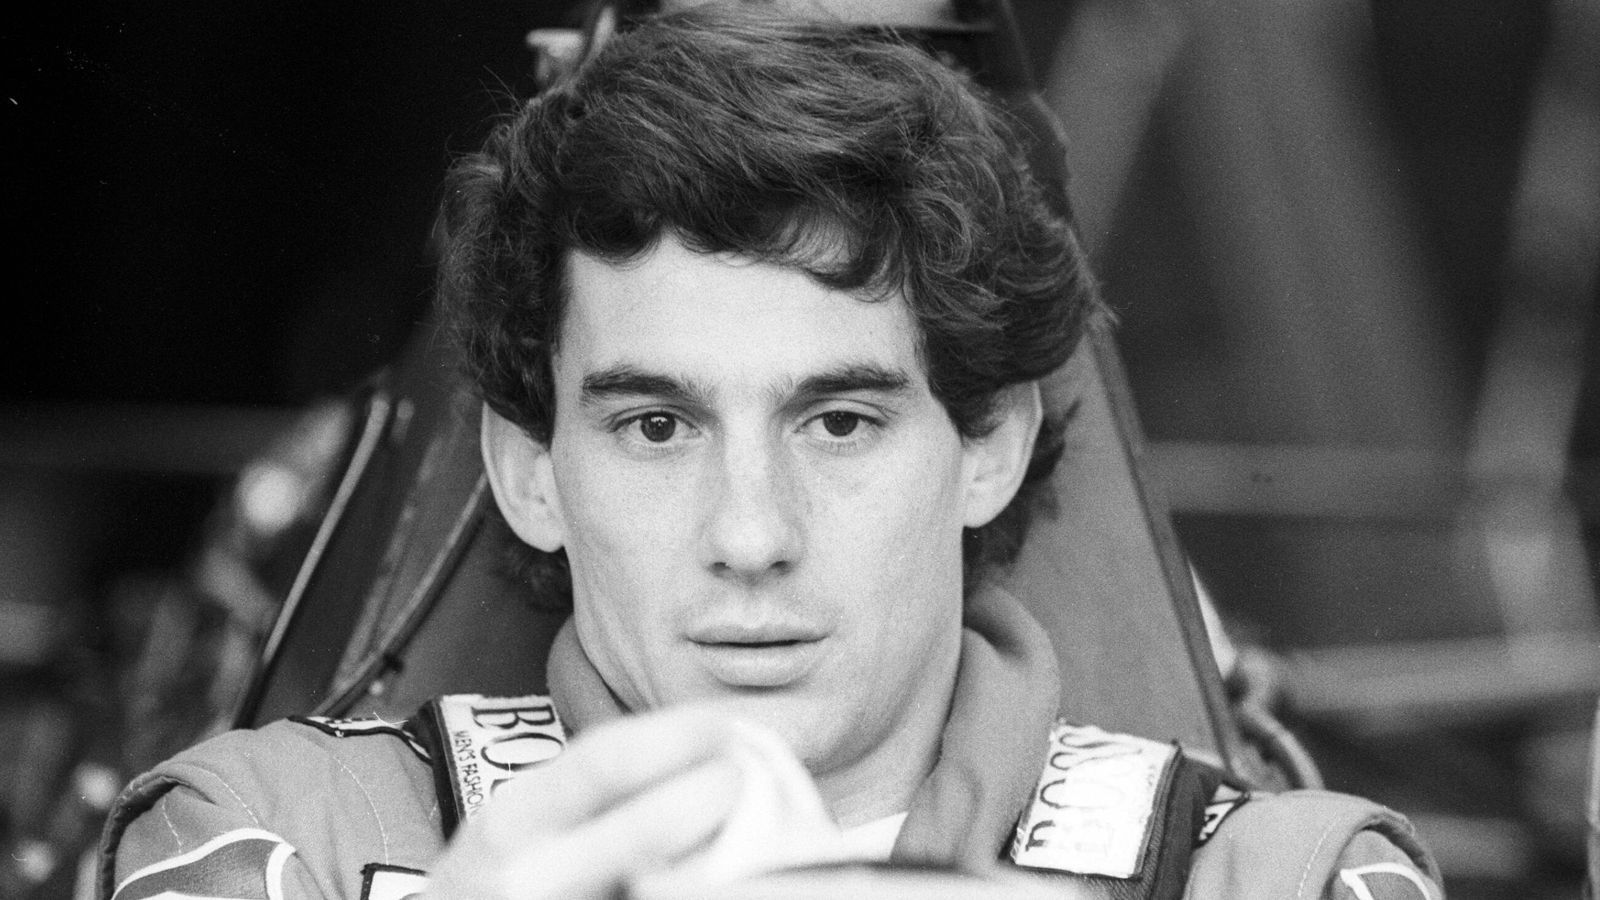 
                <strong>Ayrton Senna: Als die Formel 1 ihre Seele verlor</strong><br>
                Vor 29 Jahren, stirbt in Ayrton Senna eine Formel-1-Legende, ein Mythos. Am Todestag des Brasilianers wirft ran einen besonderen Blick auf einen besonderen Rennfahrer.
              